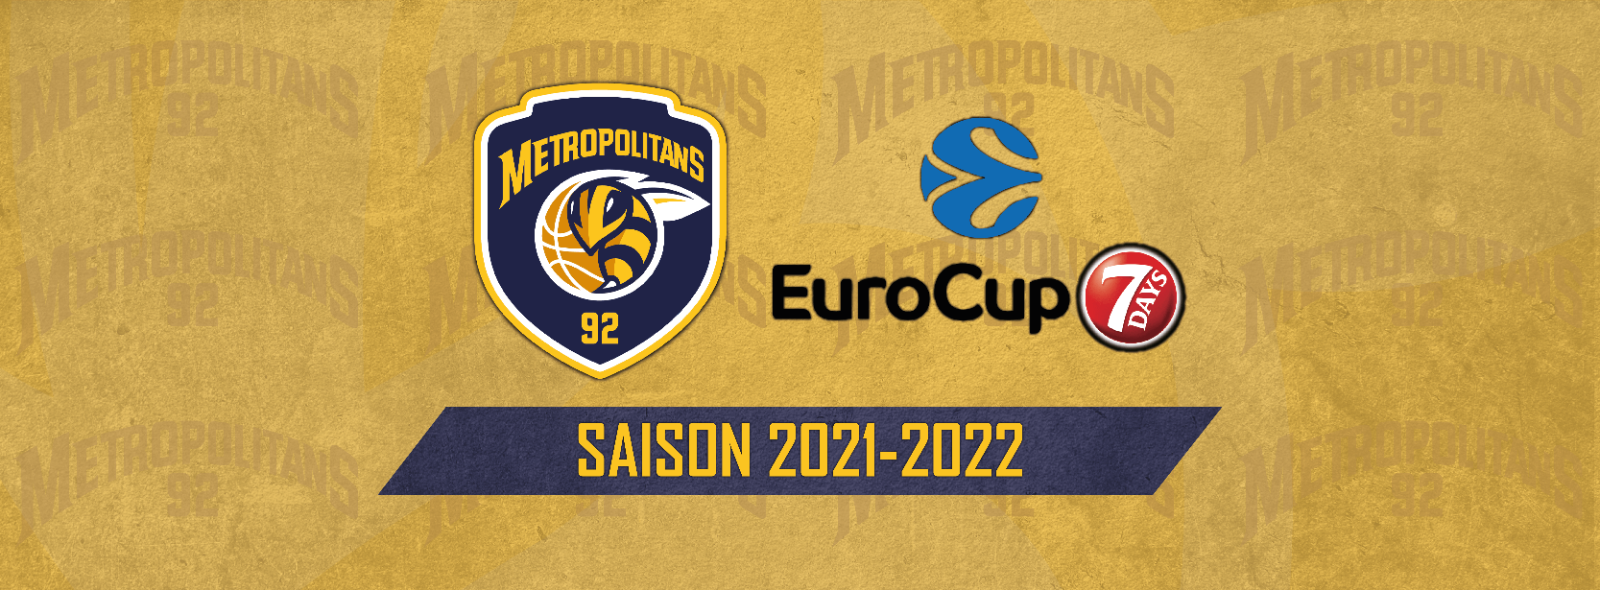 2ème saison consécutive en Eurocup pour les Metropolitans ! 